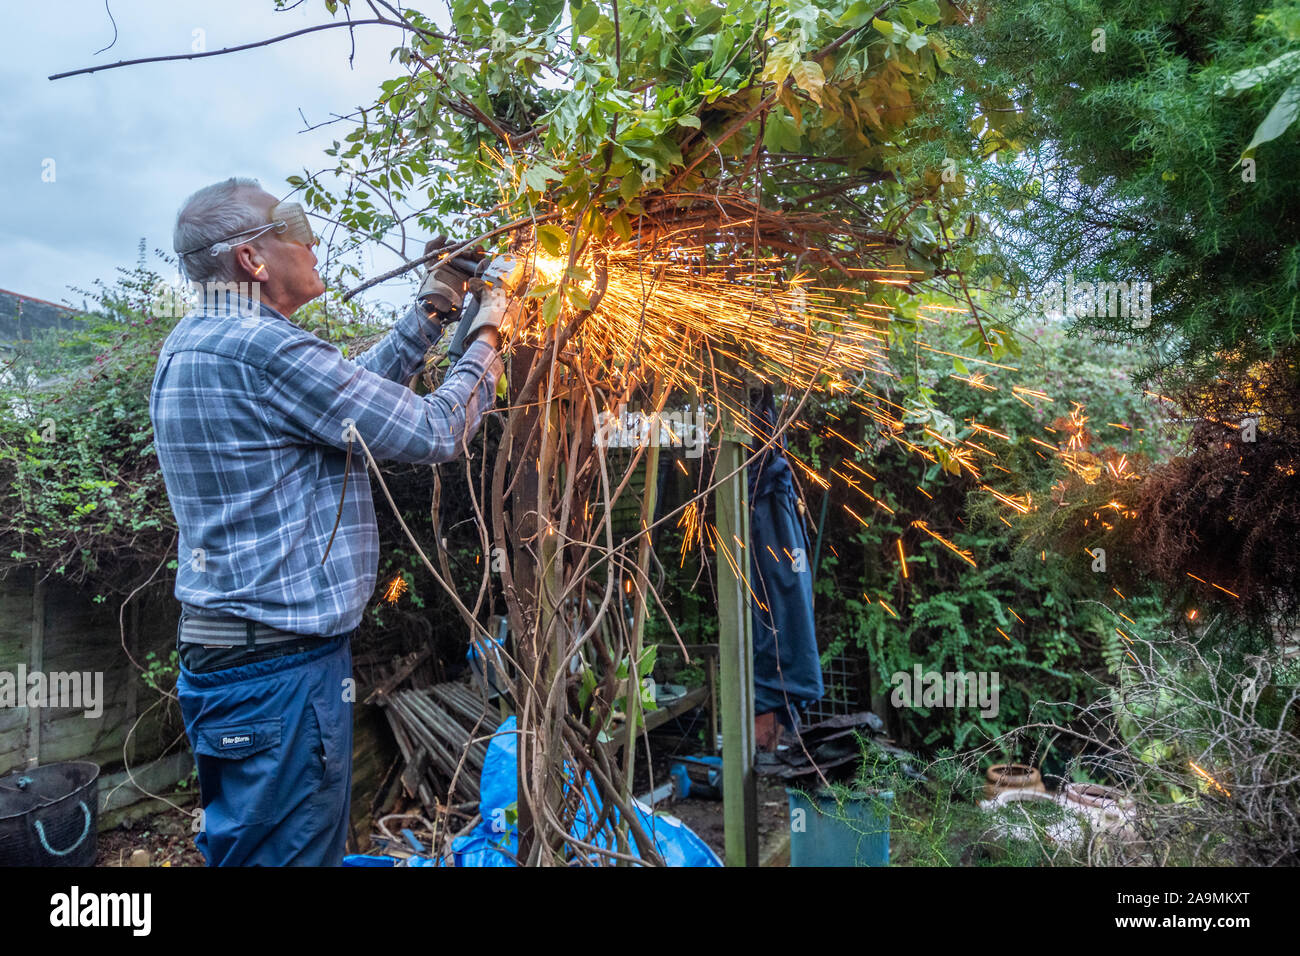 L'uomo utilizzando una smerigliatrice angolare lavora in giardino con scintille volanti. Il taglio di pericoloso vecchi chiodi da un post. Foto Stock